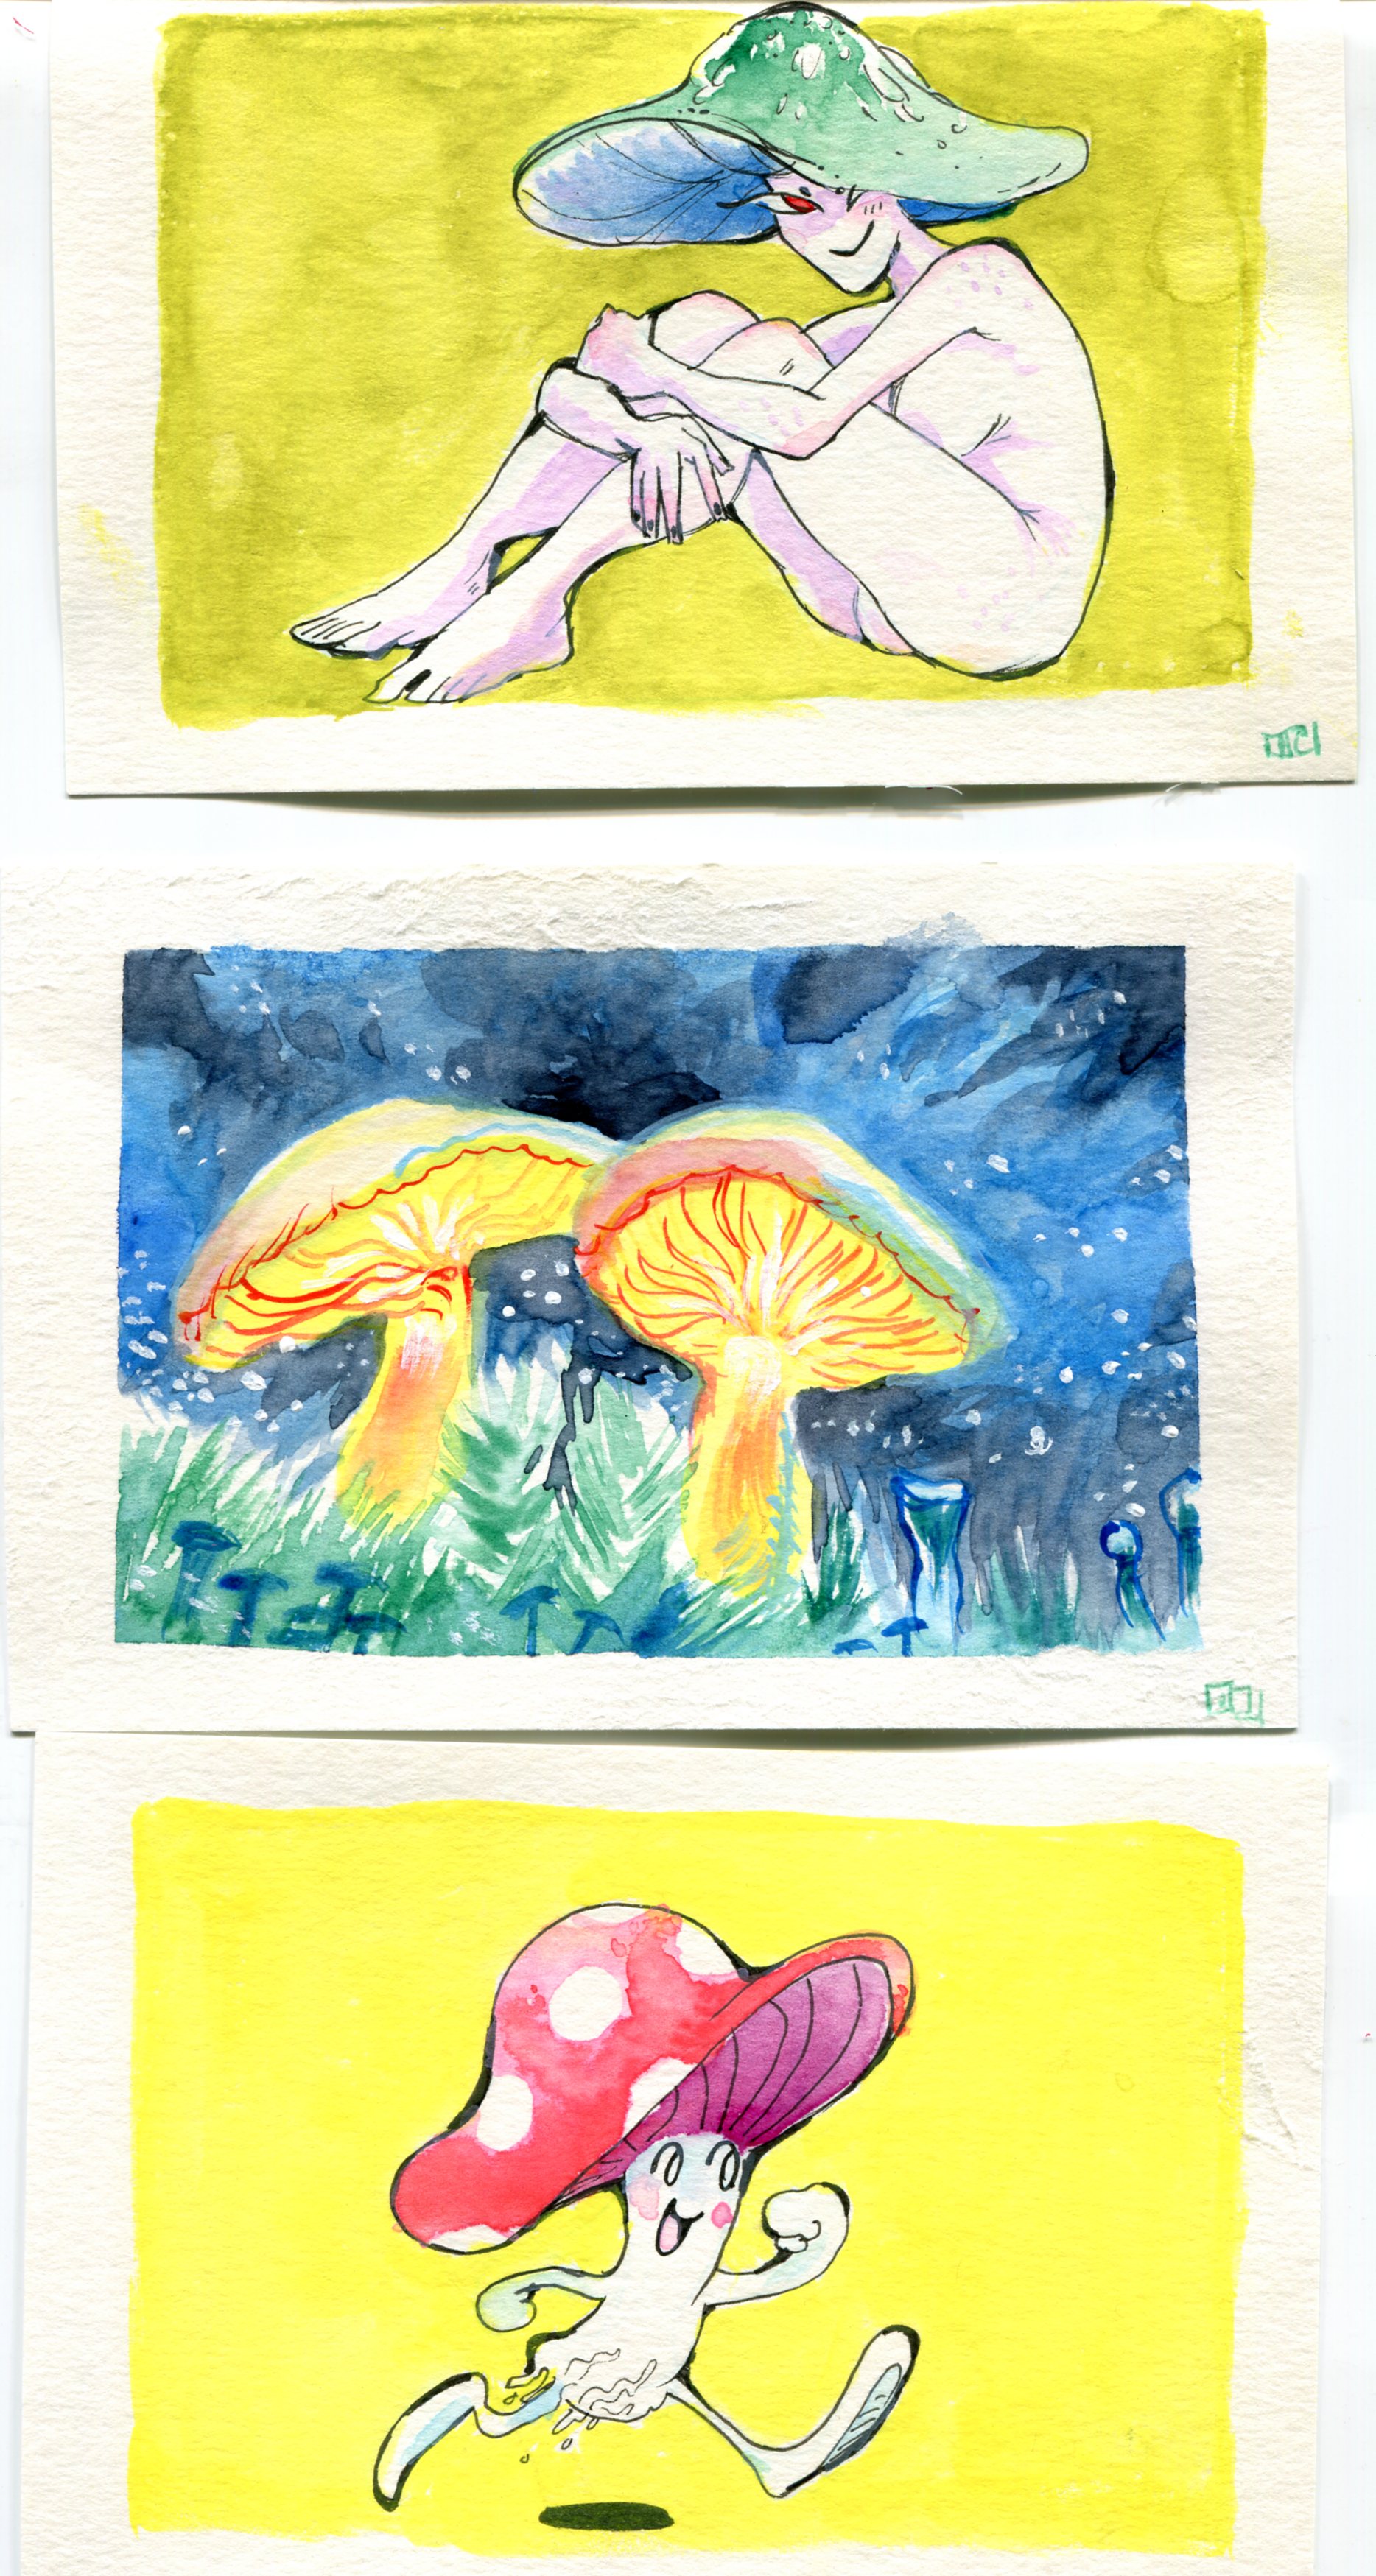 Mushroom people and mushroom illustrations on paper, watercolor